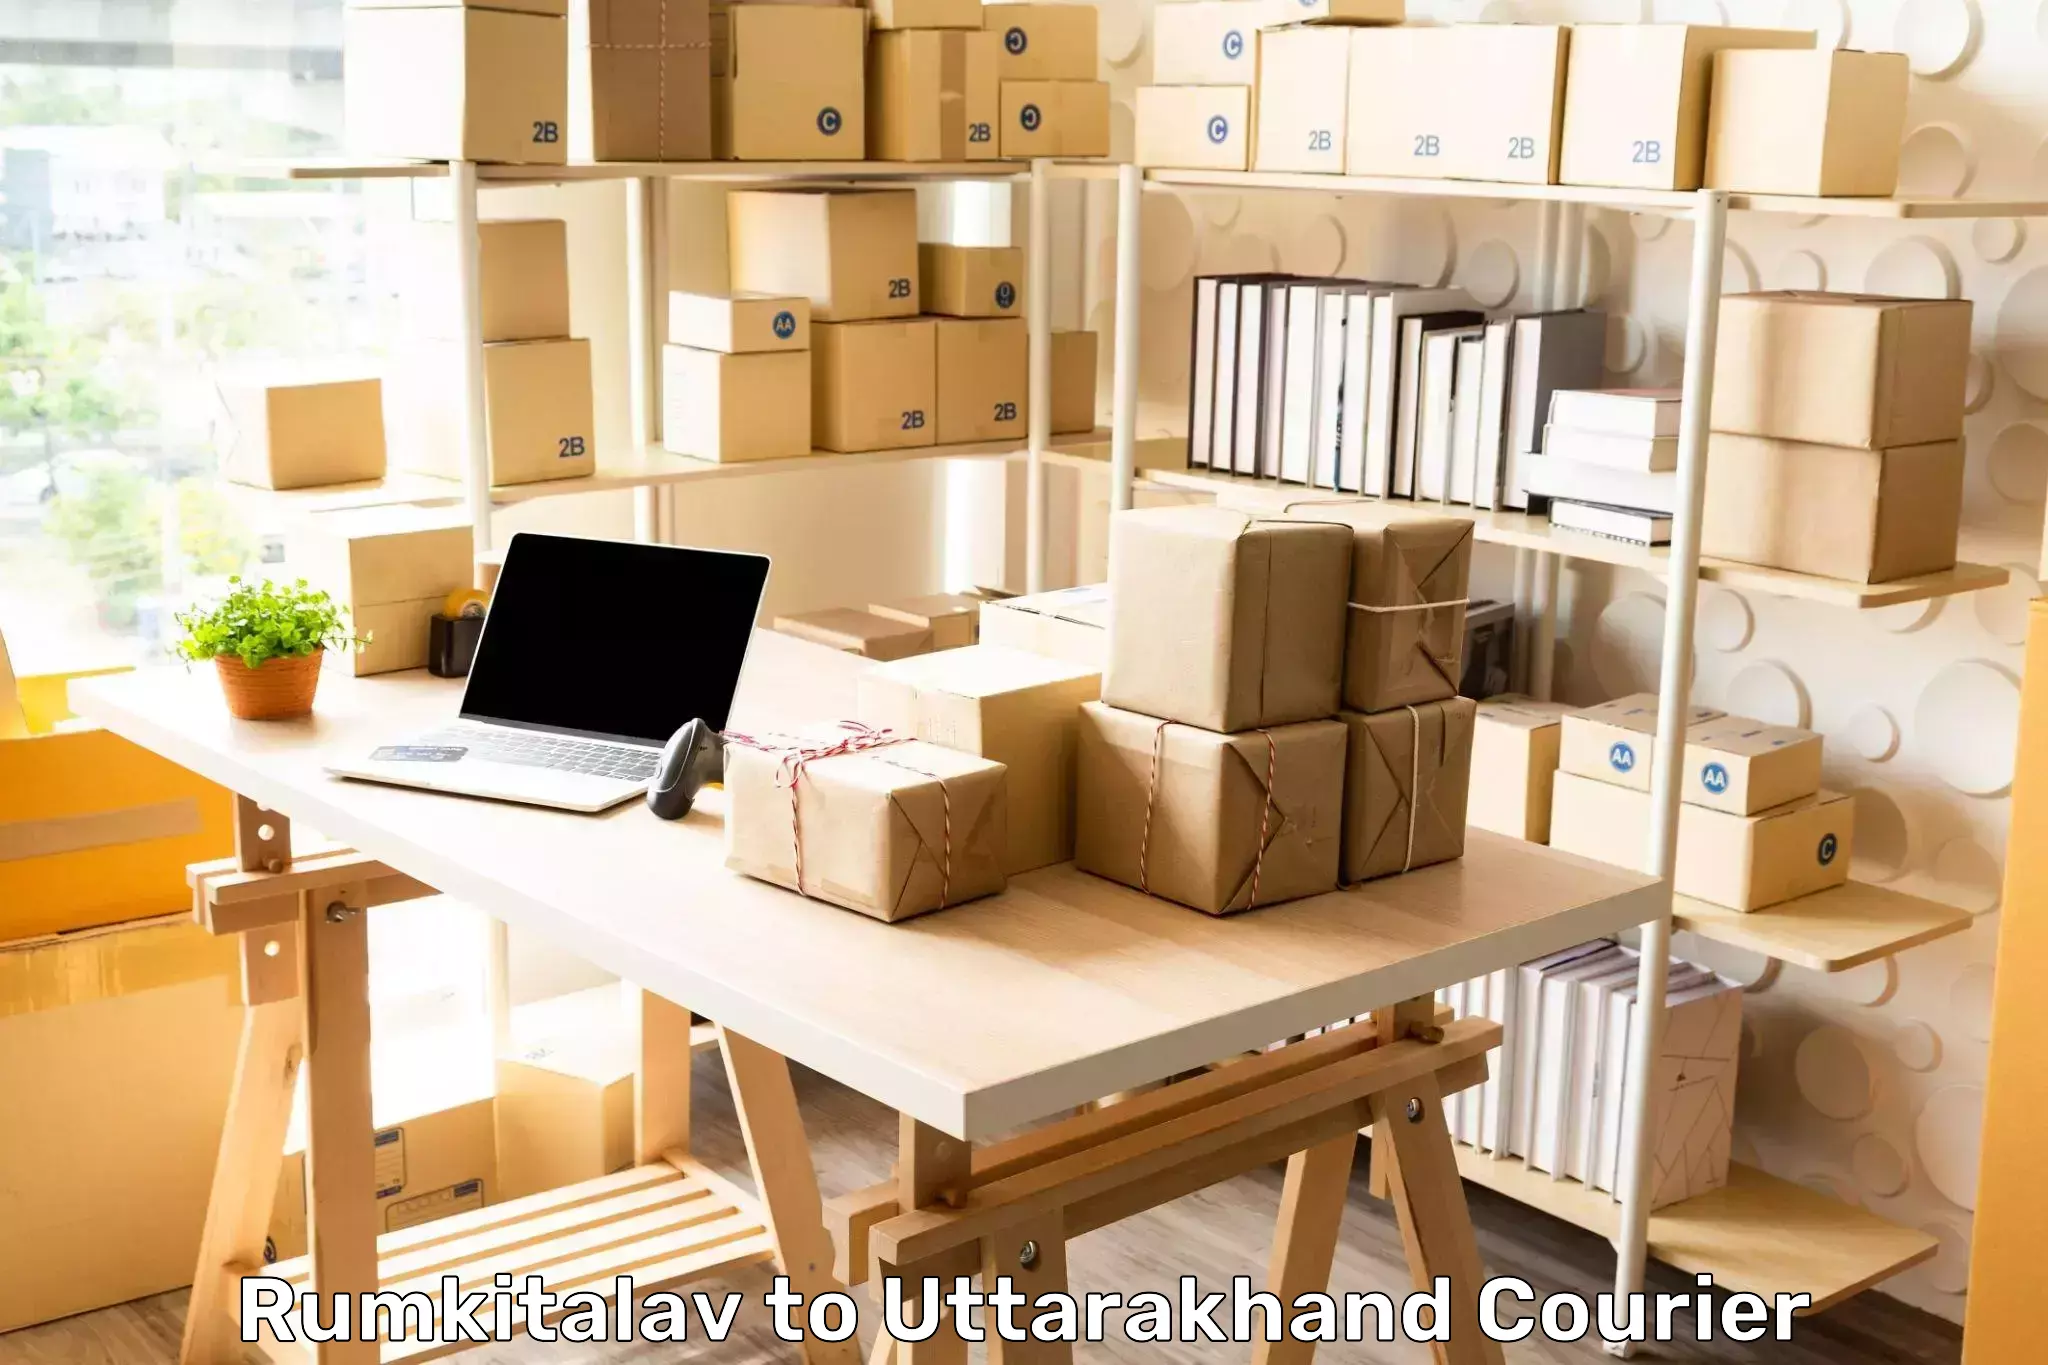 Heavy parcel delivery in Rumkitalav to Uttarakhand